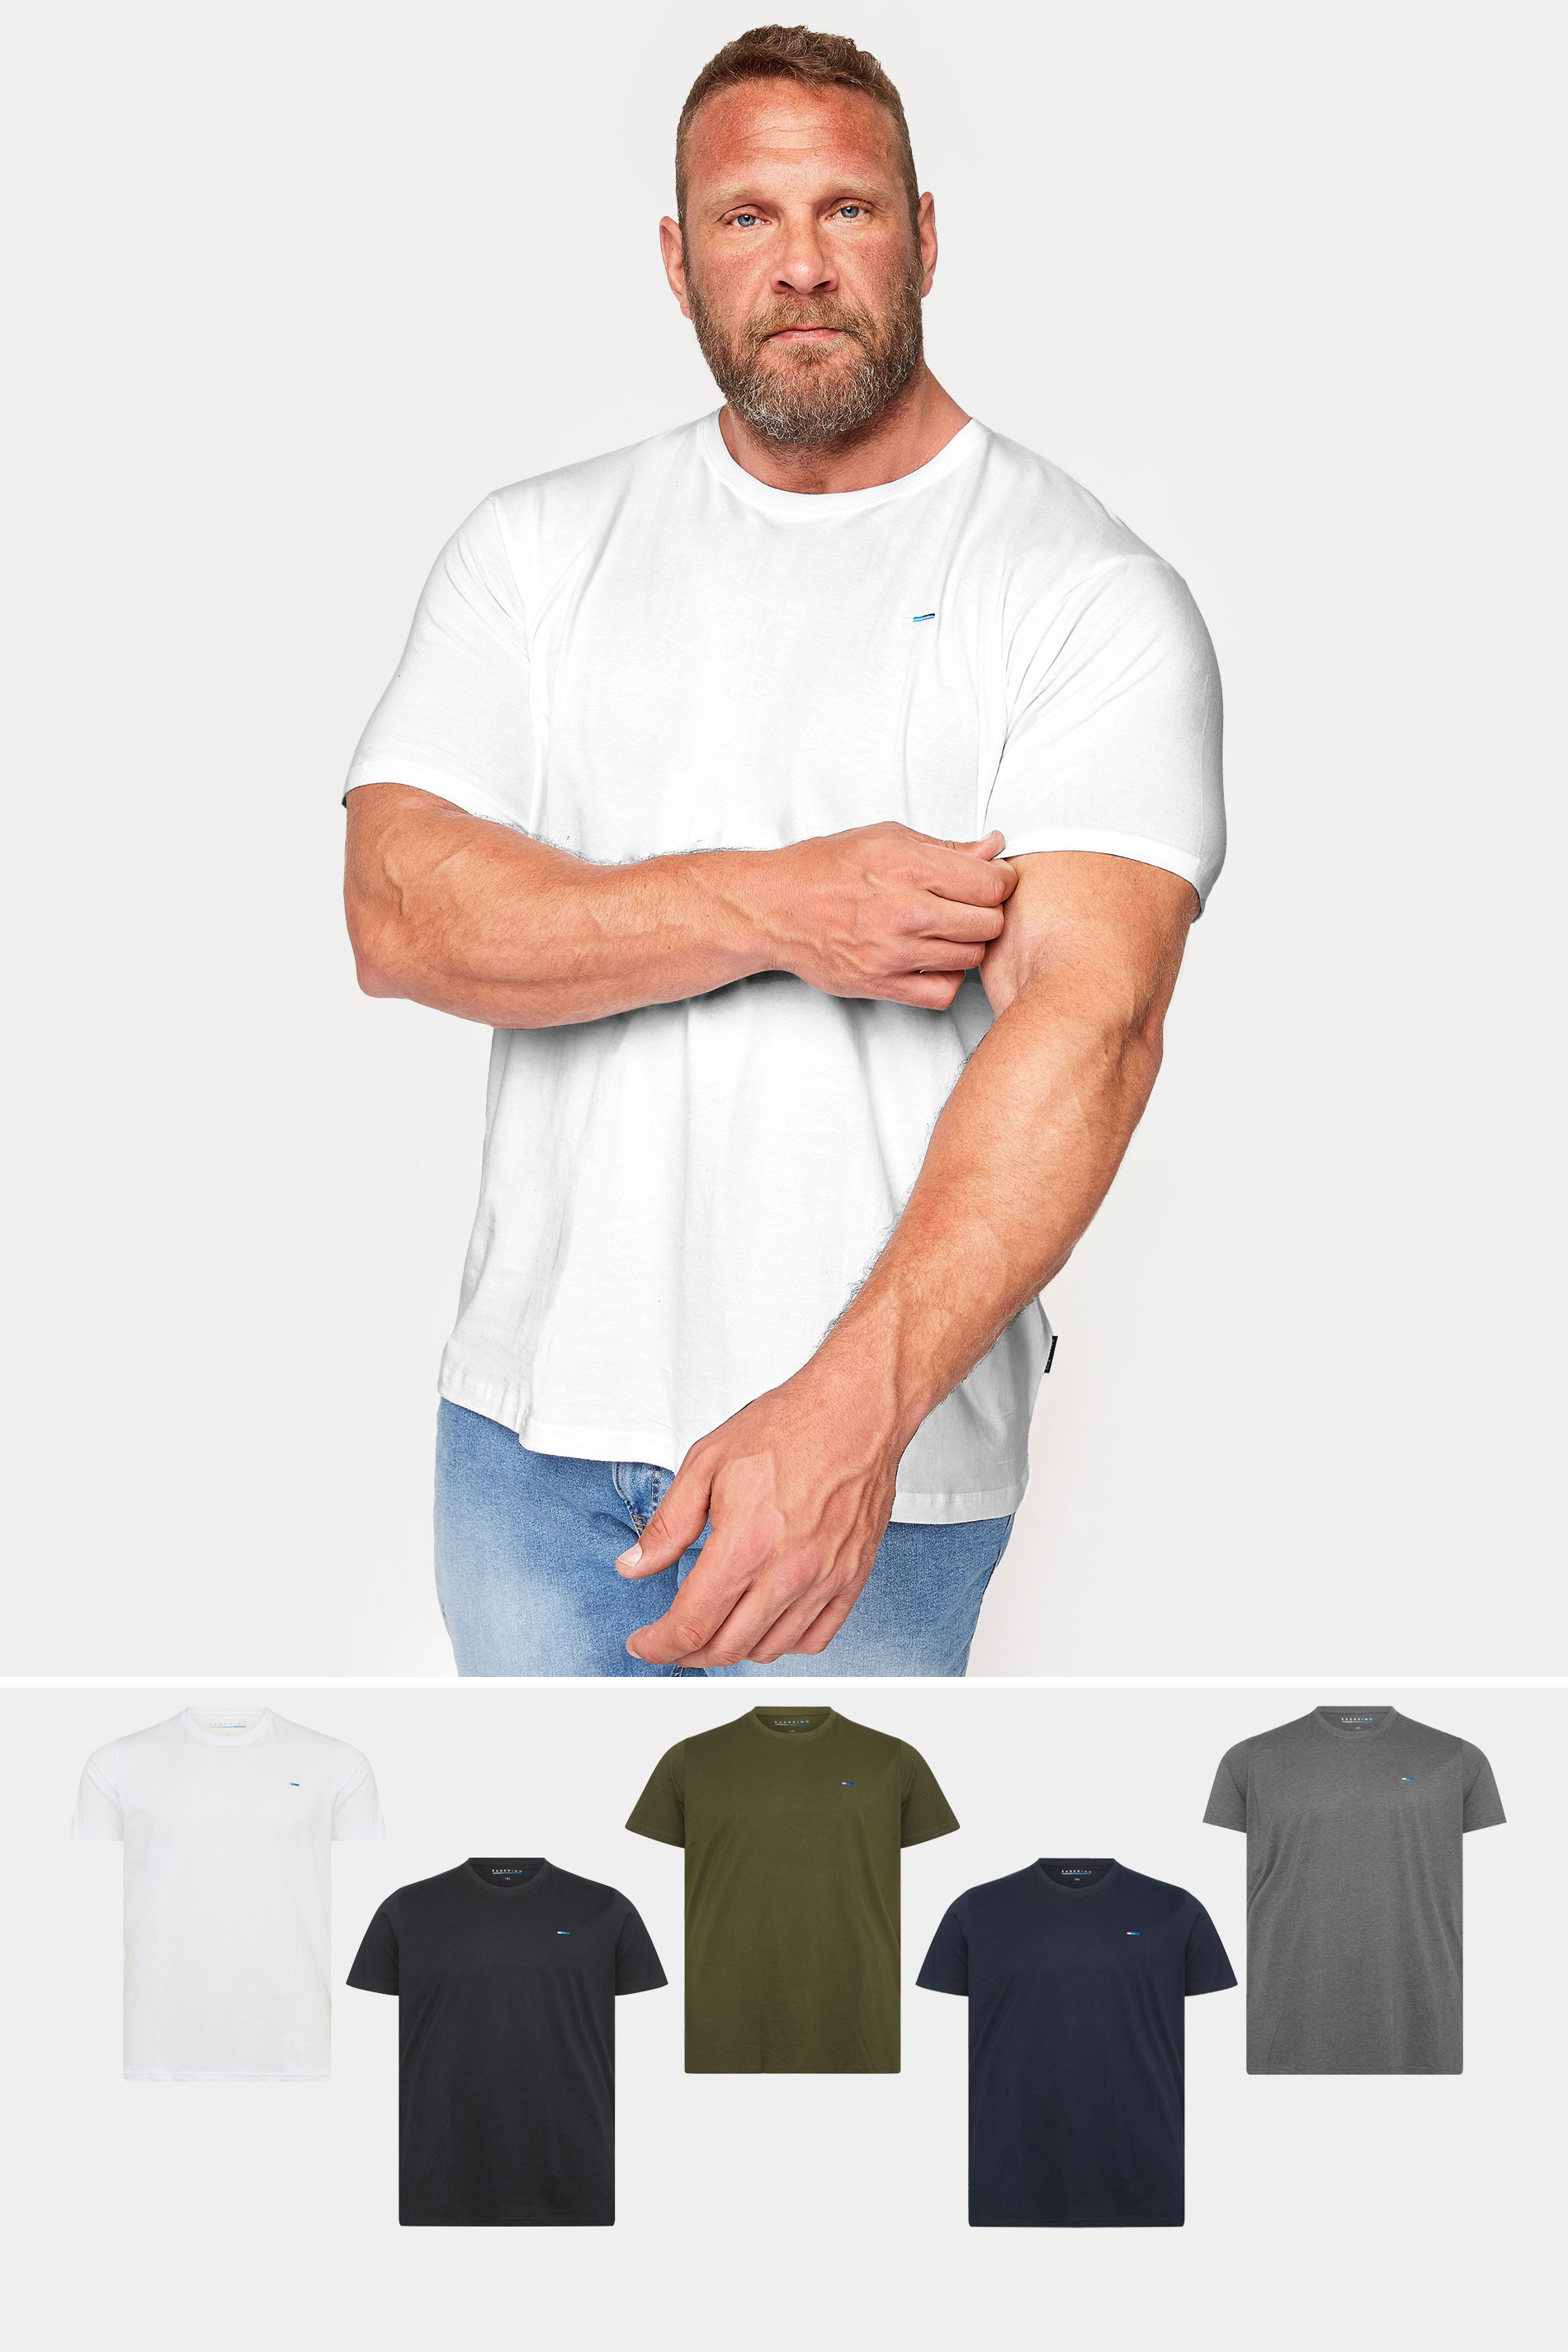 BadRhino Big & Tall 5 Pack Black & White Core T-Shirts | BadRhino 1